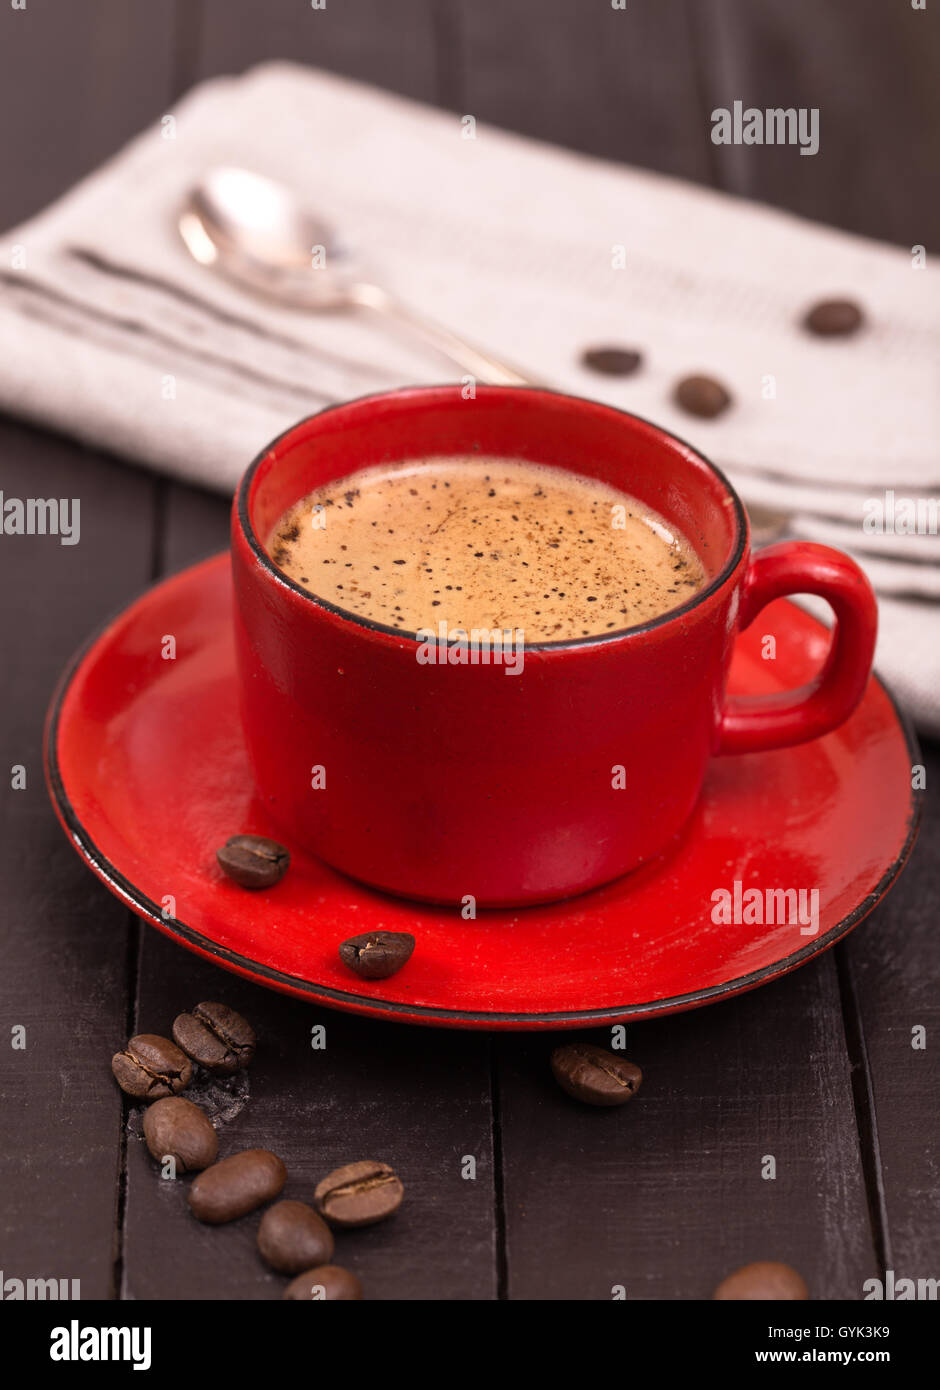 Tasse de café rouge Banque D'Images